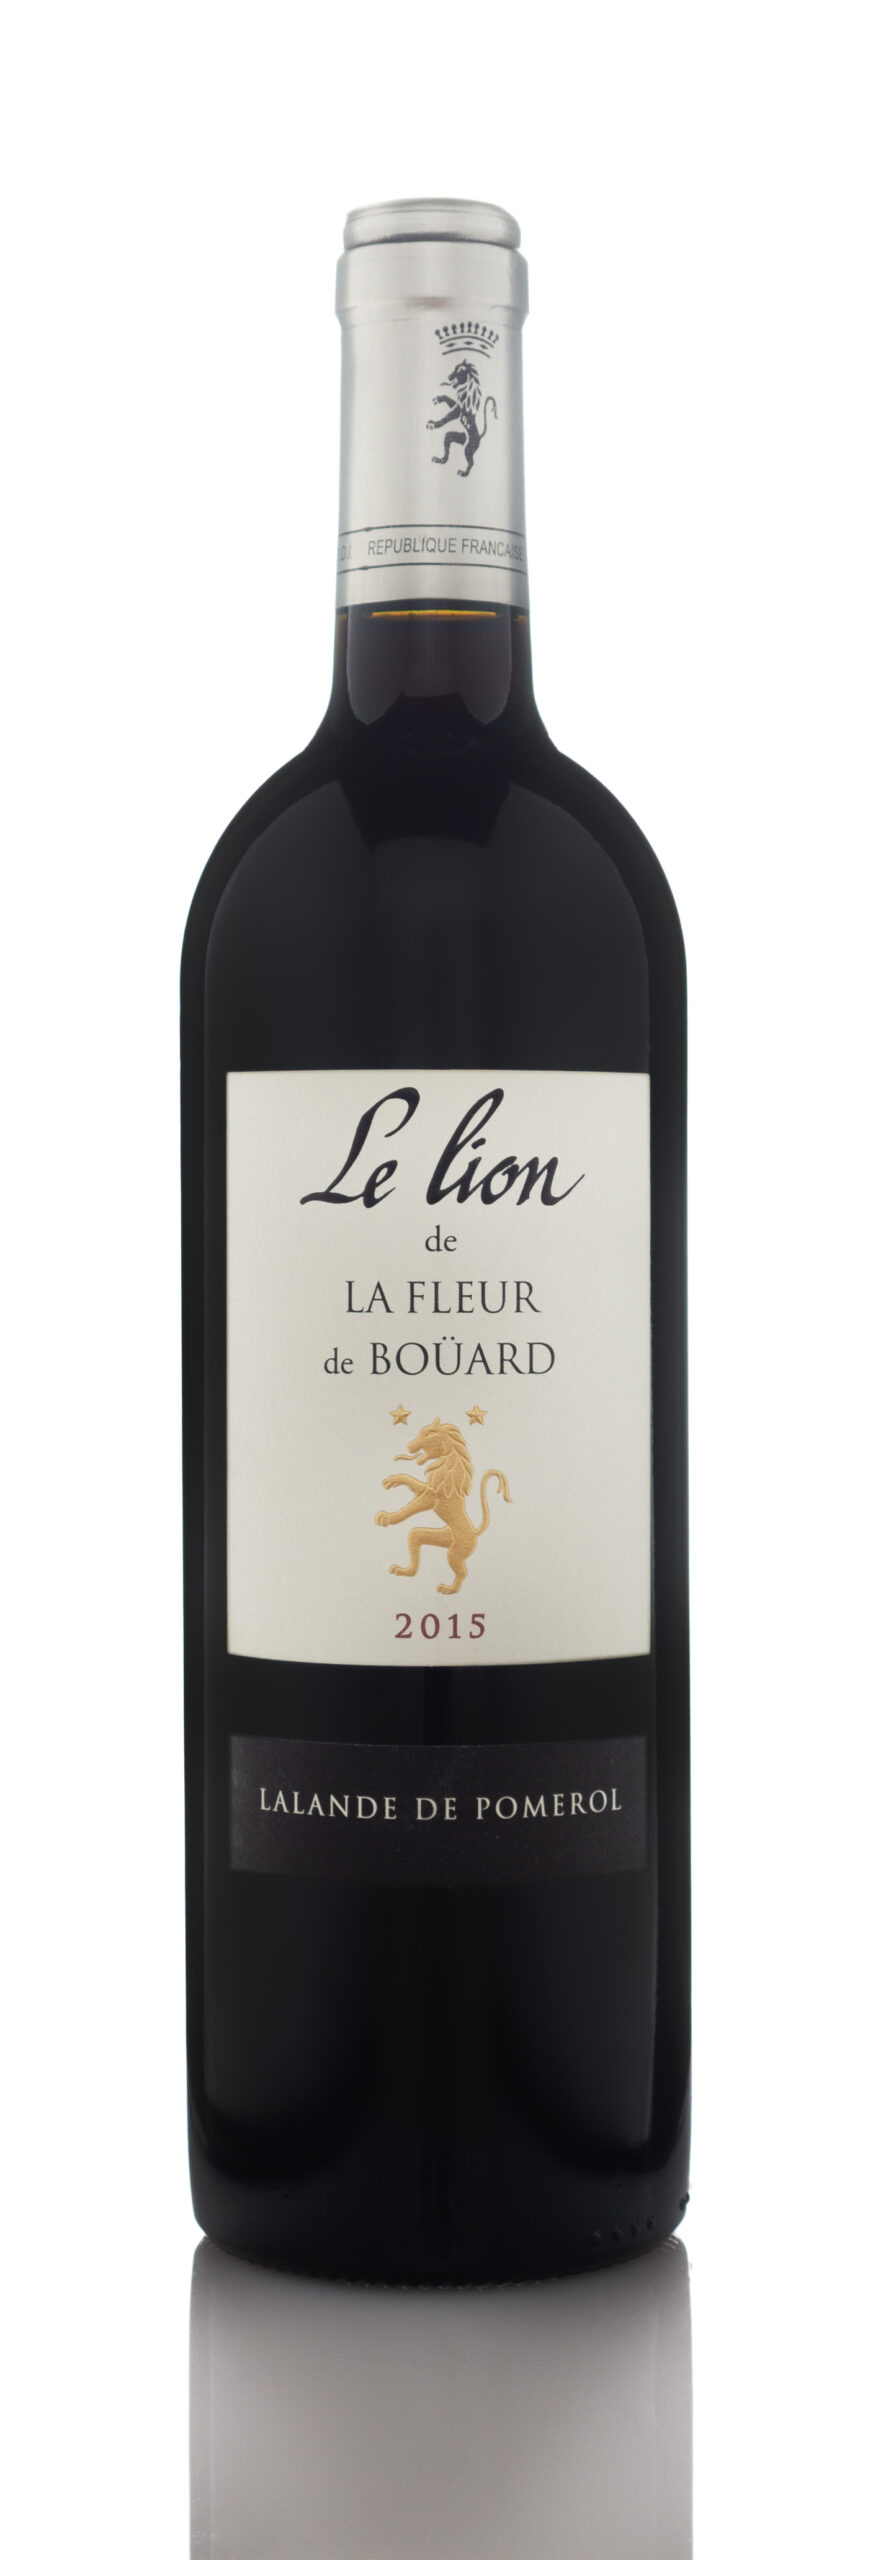 2015 Le Lion de La Fleur de Bouard, Lalande-de-Pomerol